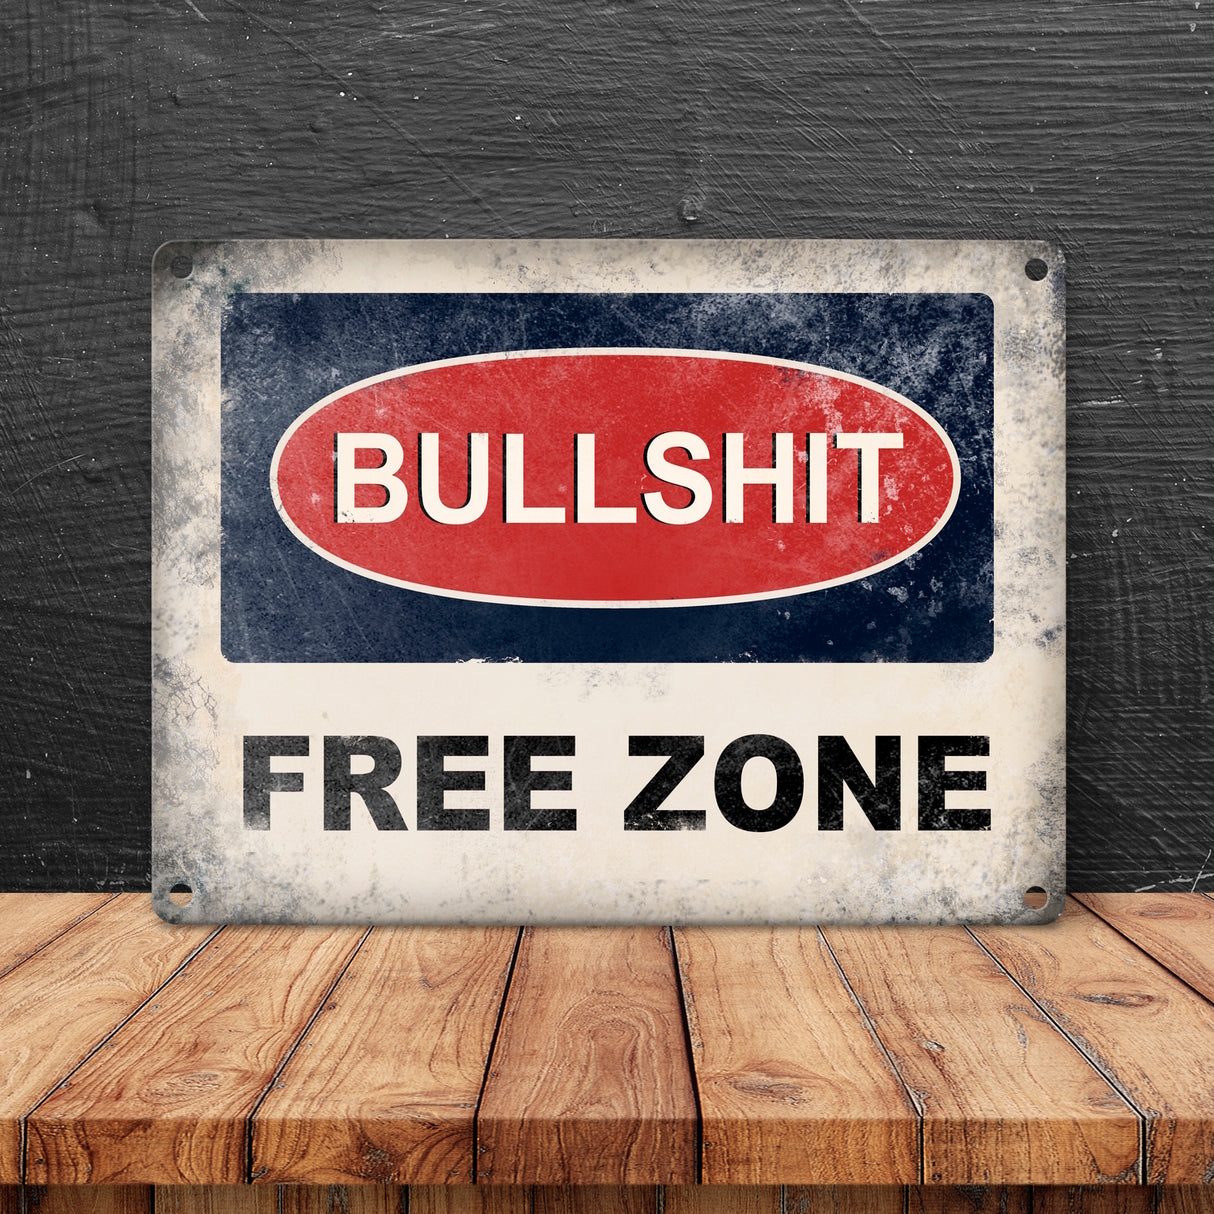 Bullshit Free Zone Metallschild - bullshitfreie Zone